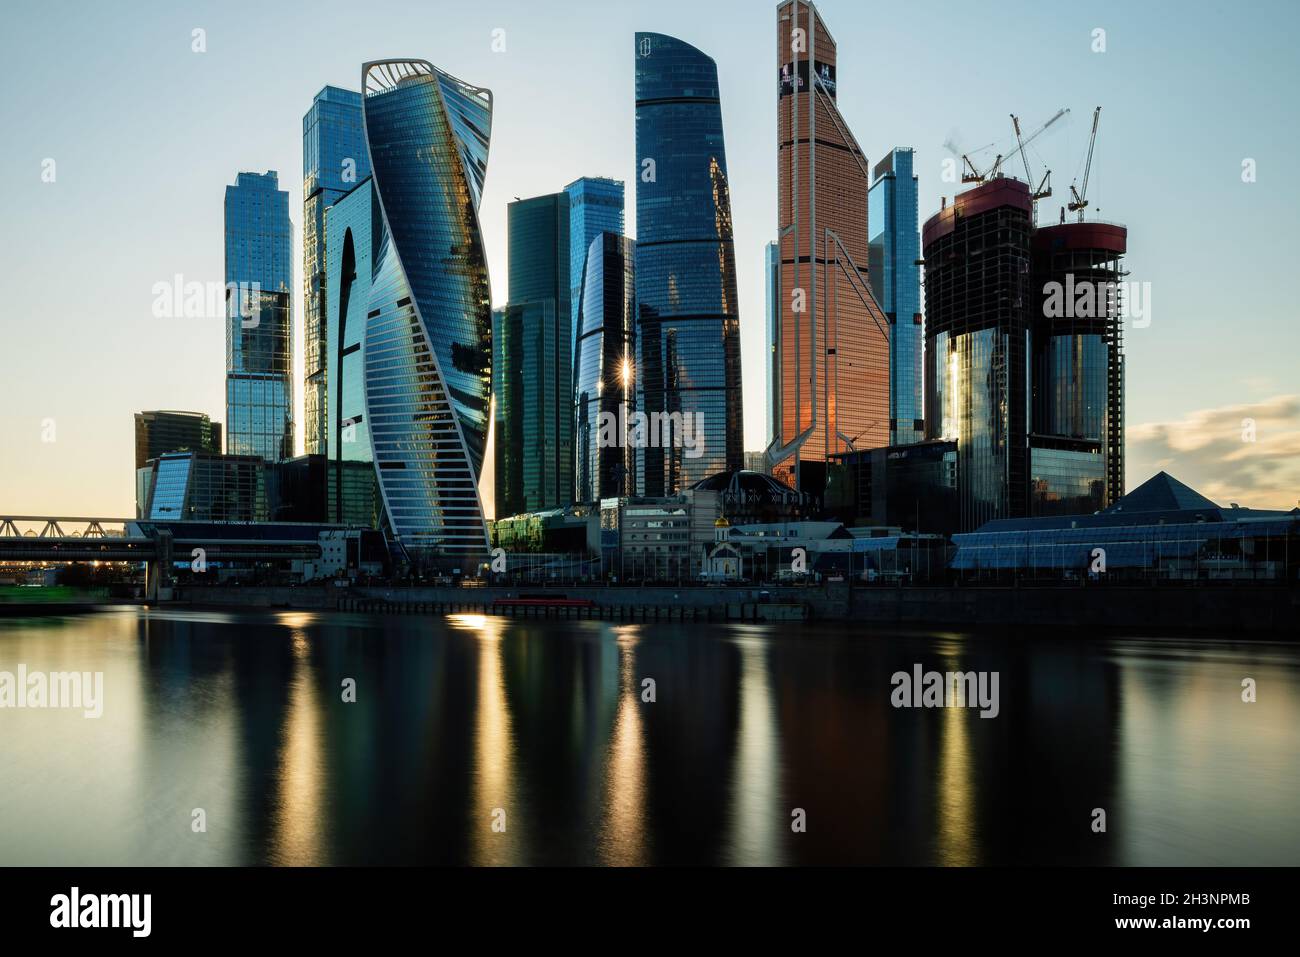 MOSCÚ, RUSIA - 29 de octubre de 2021: Vista nocturna de la ciudad de Moscú. Fotografías de alta calidad Foto de stock